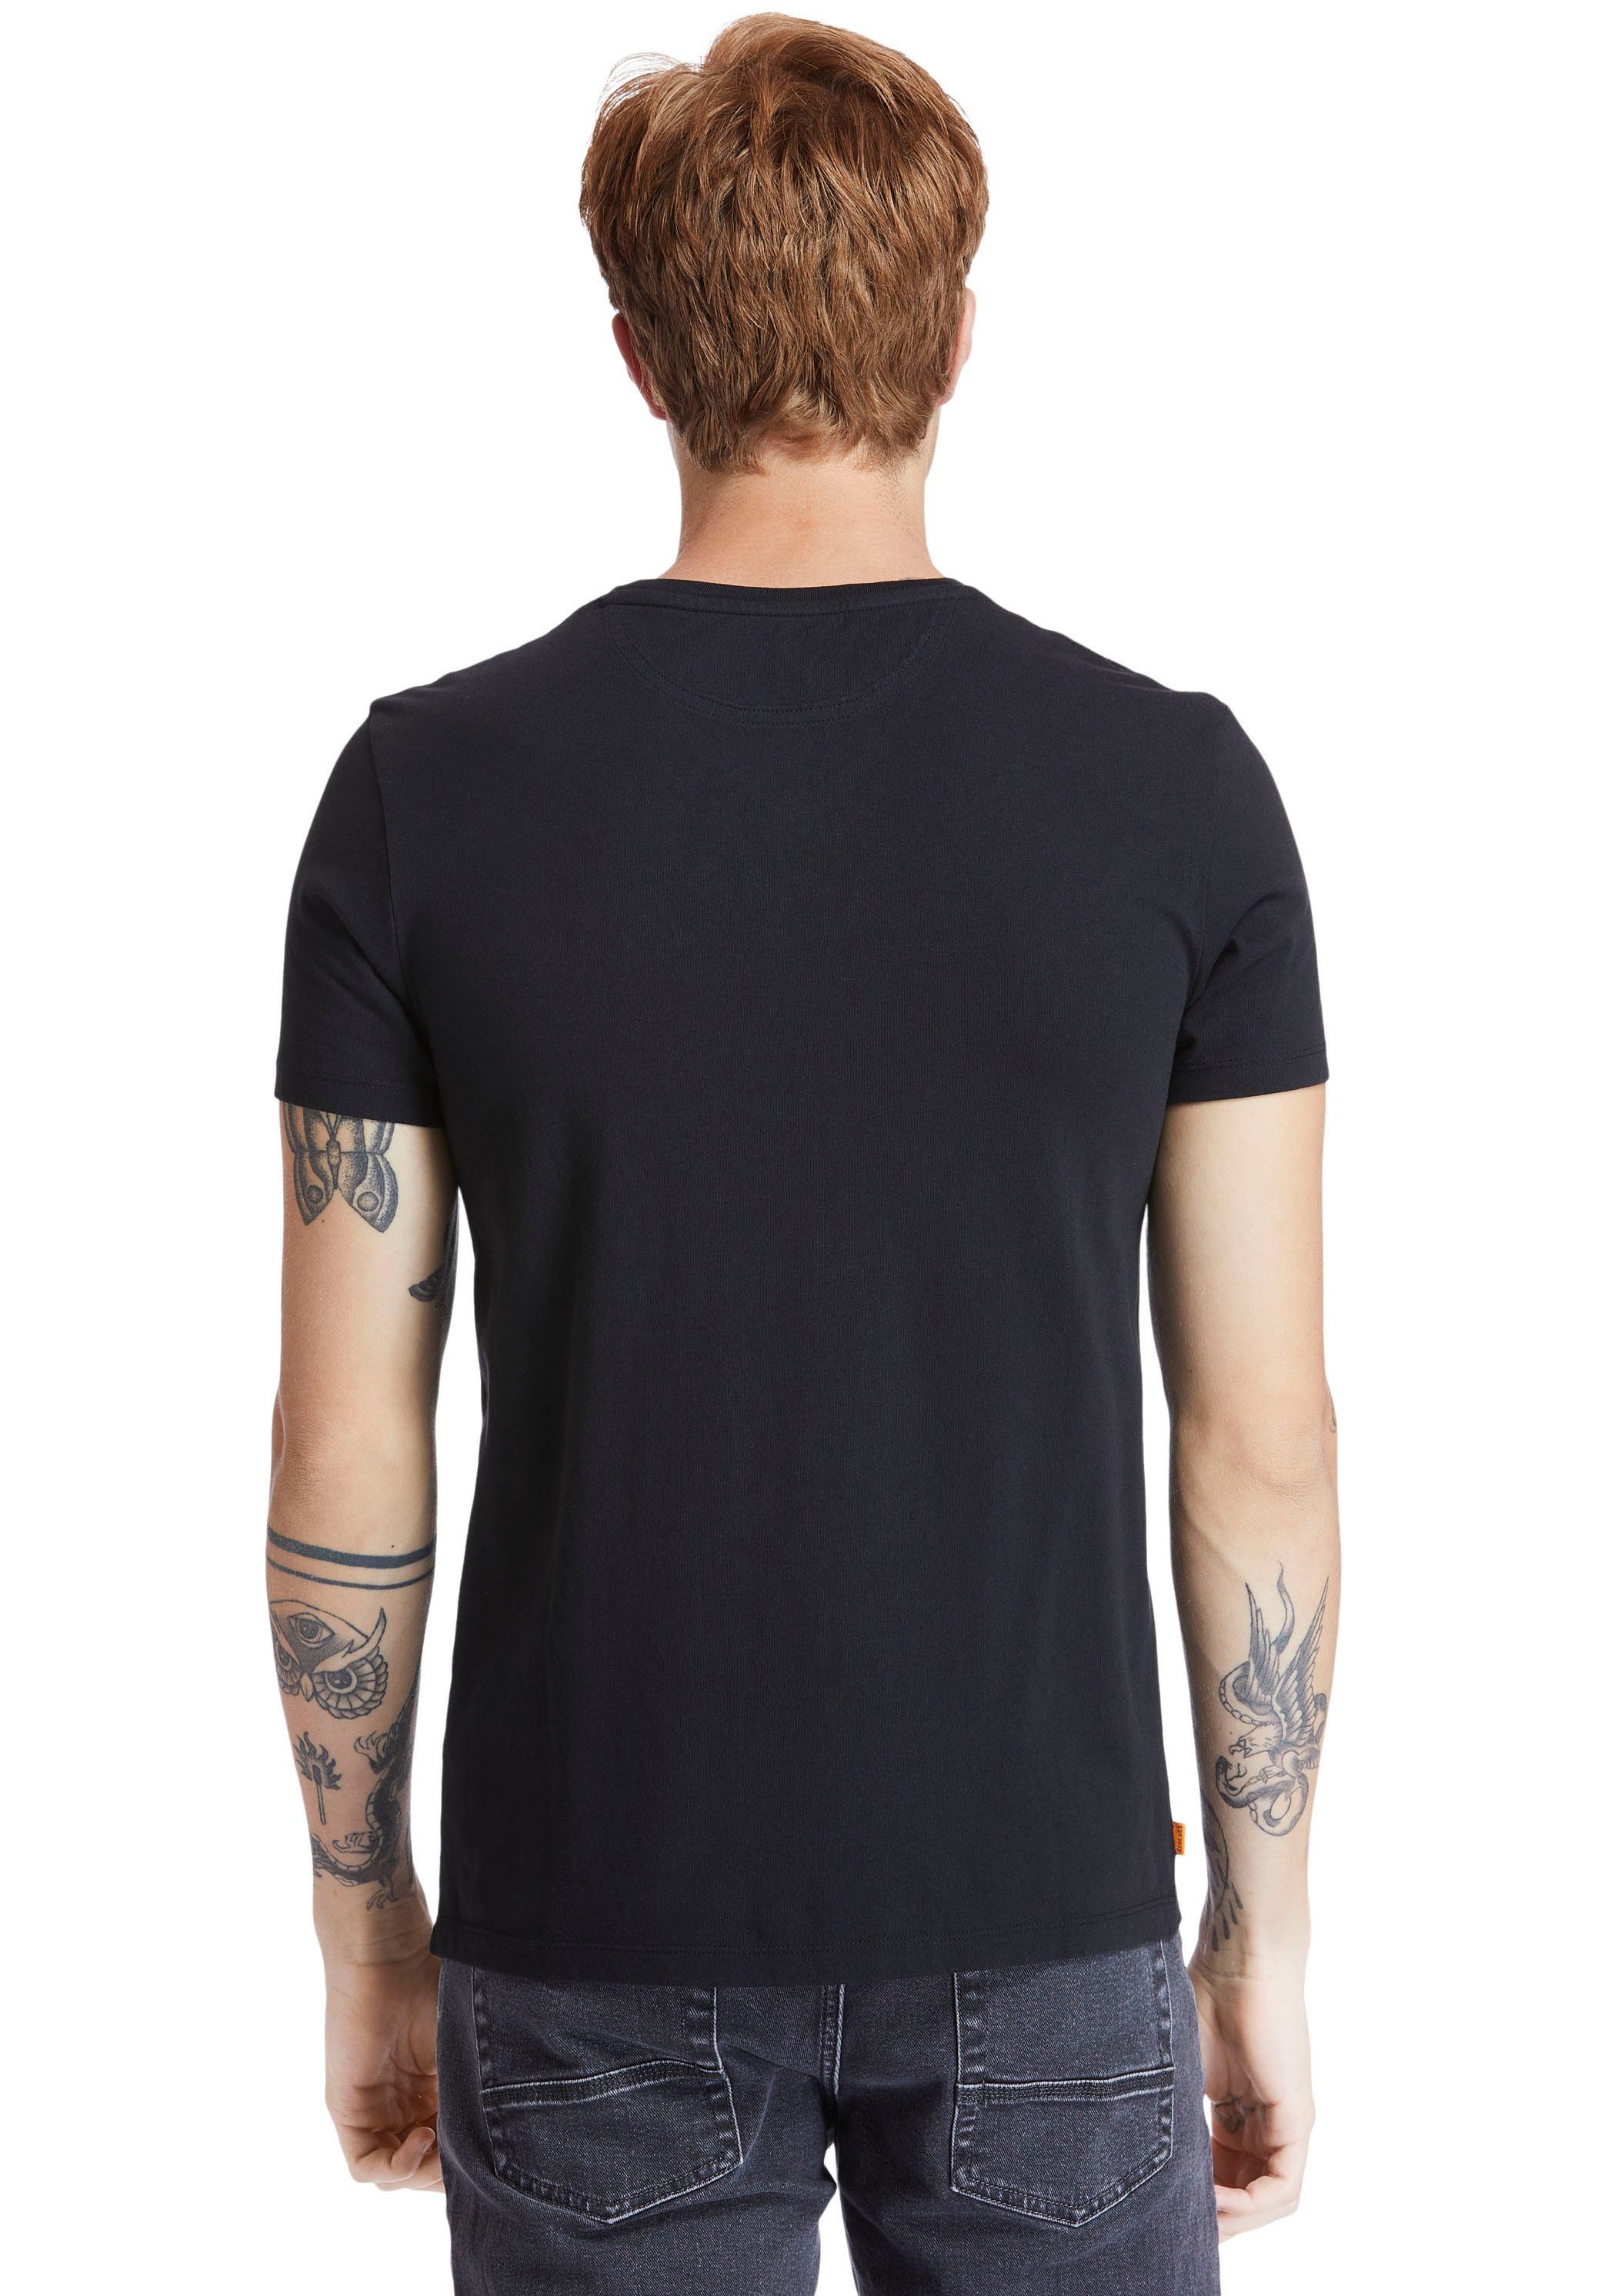 Timberland T-Shirt Dunstan schwarz Jerse River